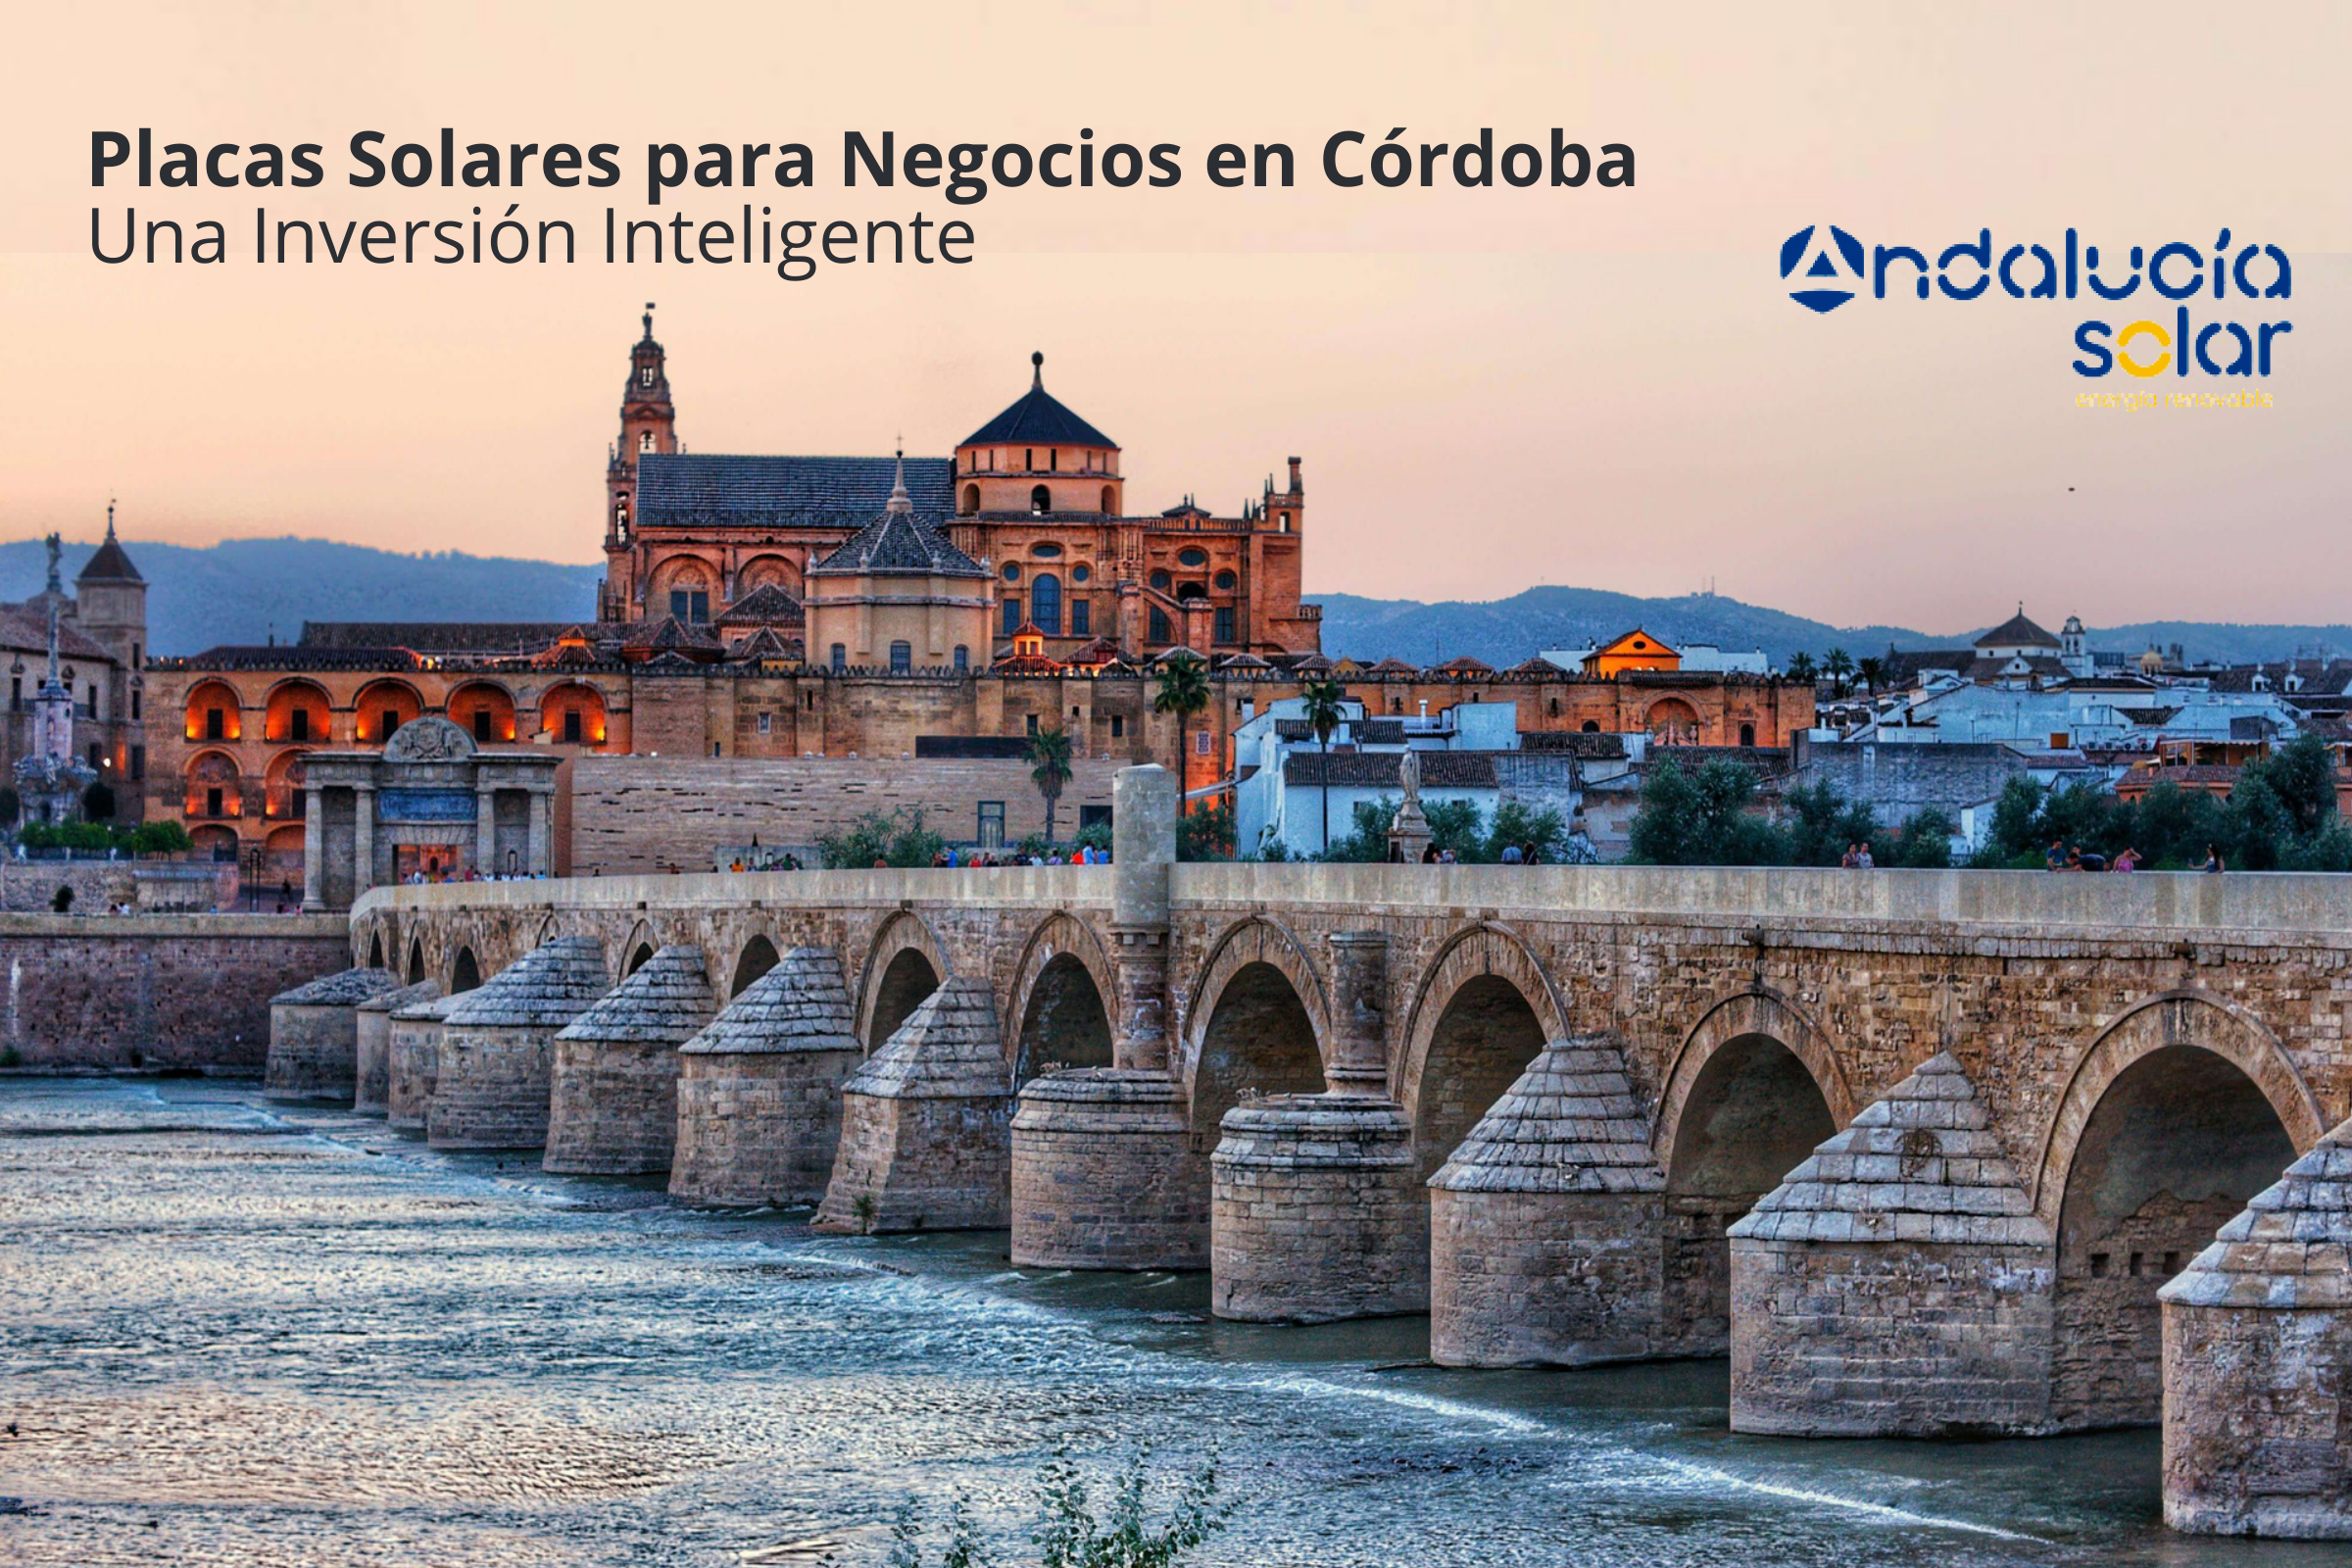 Placas Solares para Negocios en Córdoba Una Inversión Inteligente